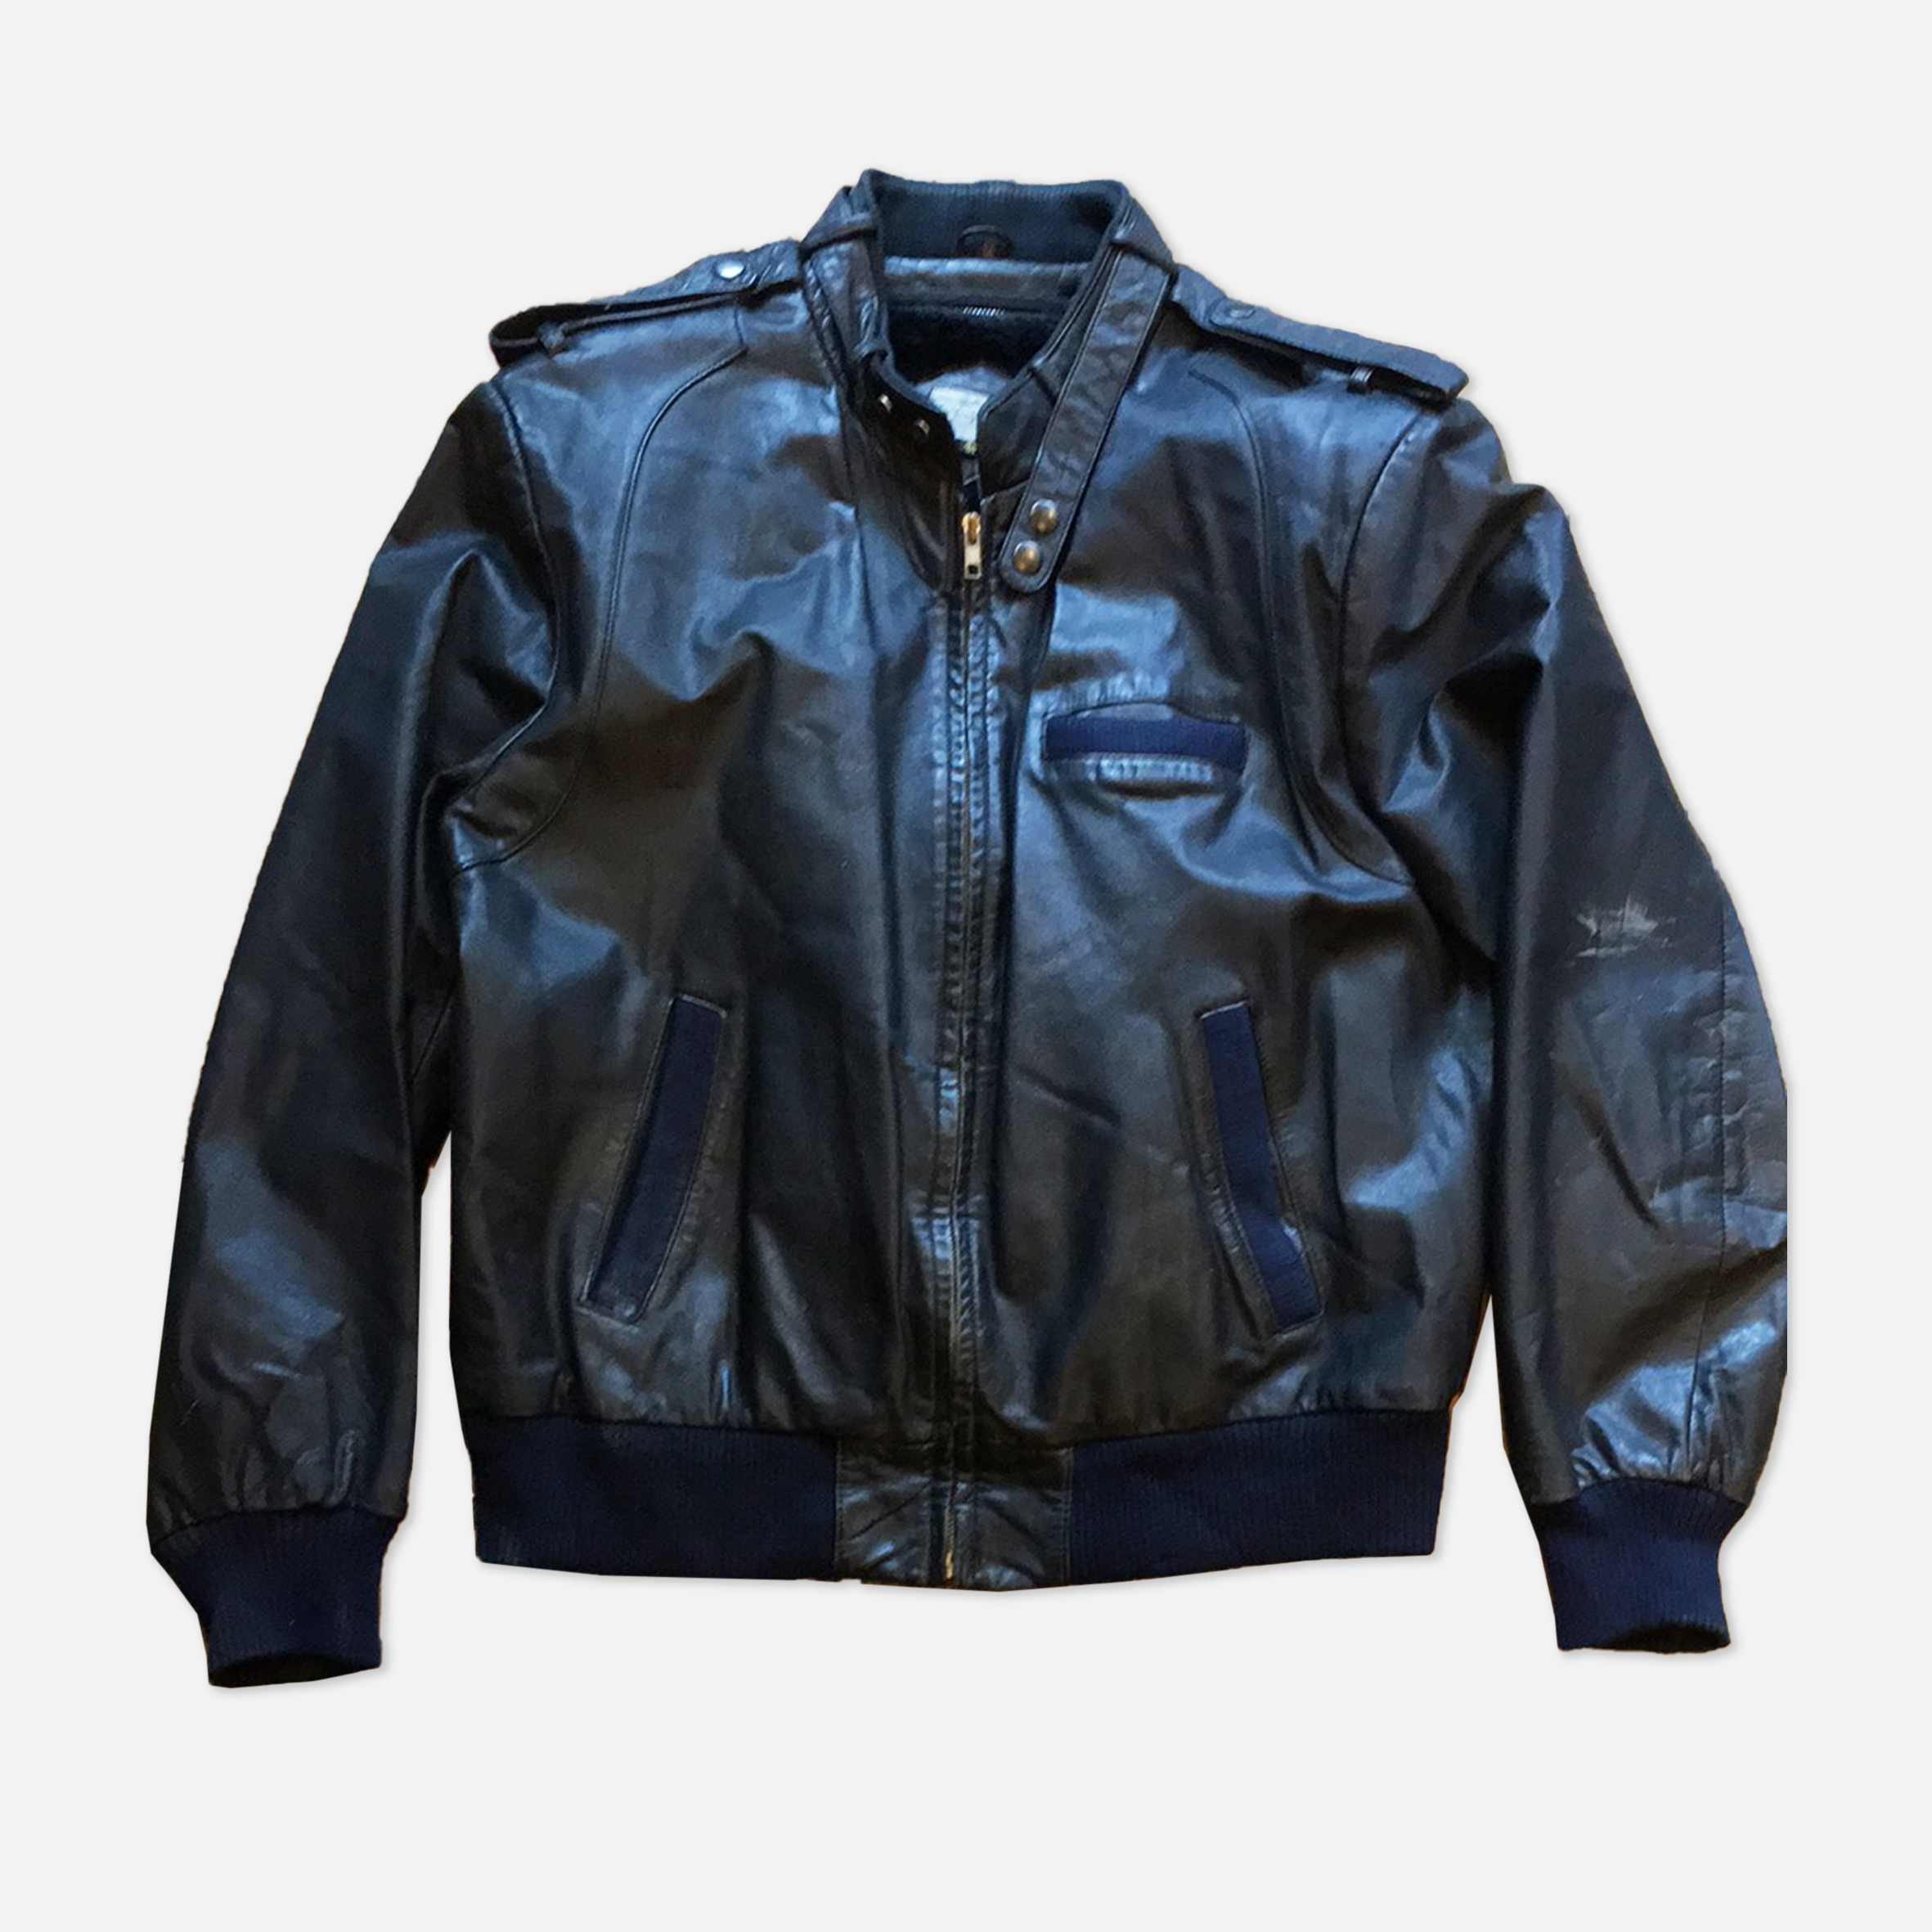 Caspi Leather Jacket – The Era NYC